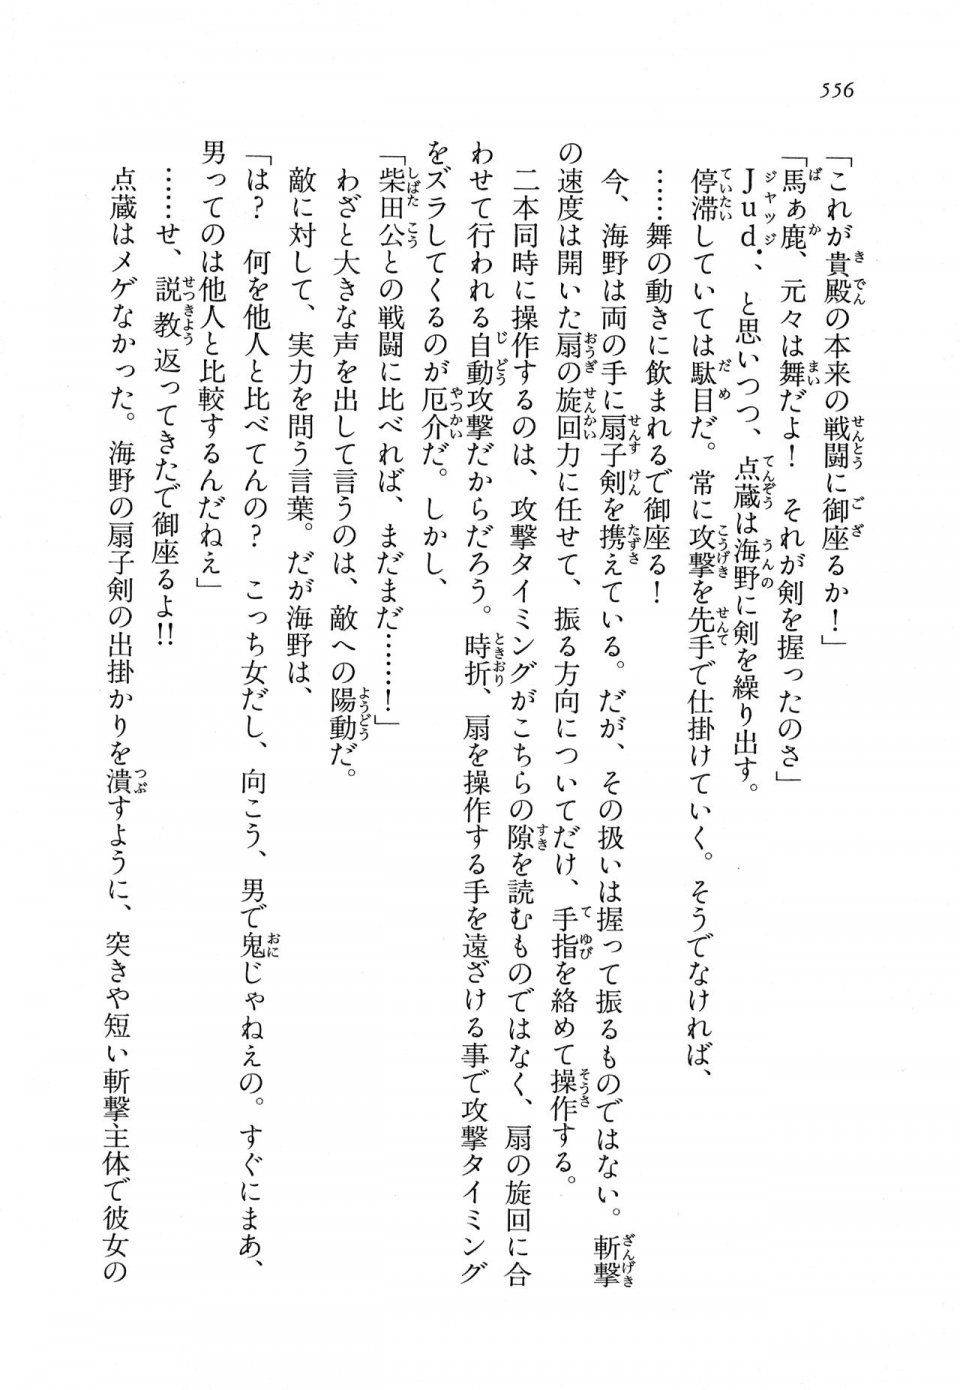 Kyoukai Senjou no Horizon LN Vol 11(5A) - Photo #556